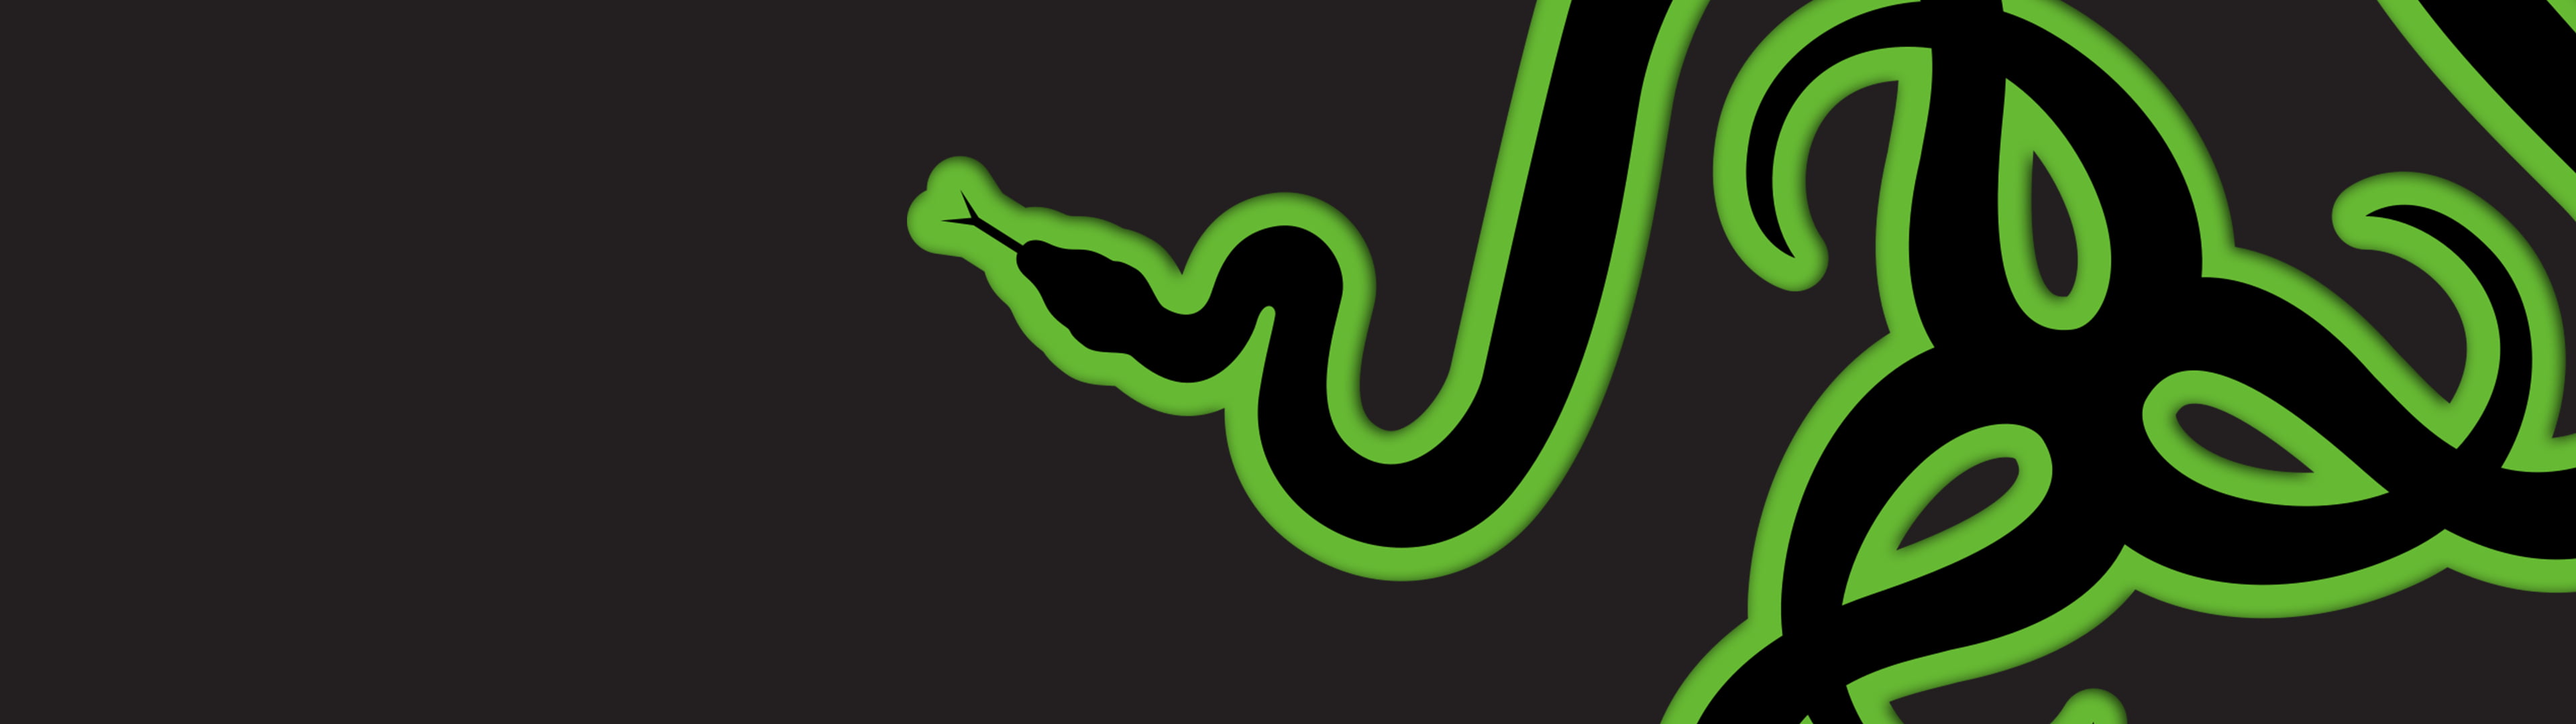 Razer logo, Razer logo, green, dark, snake, animals, digital art